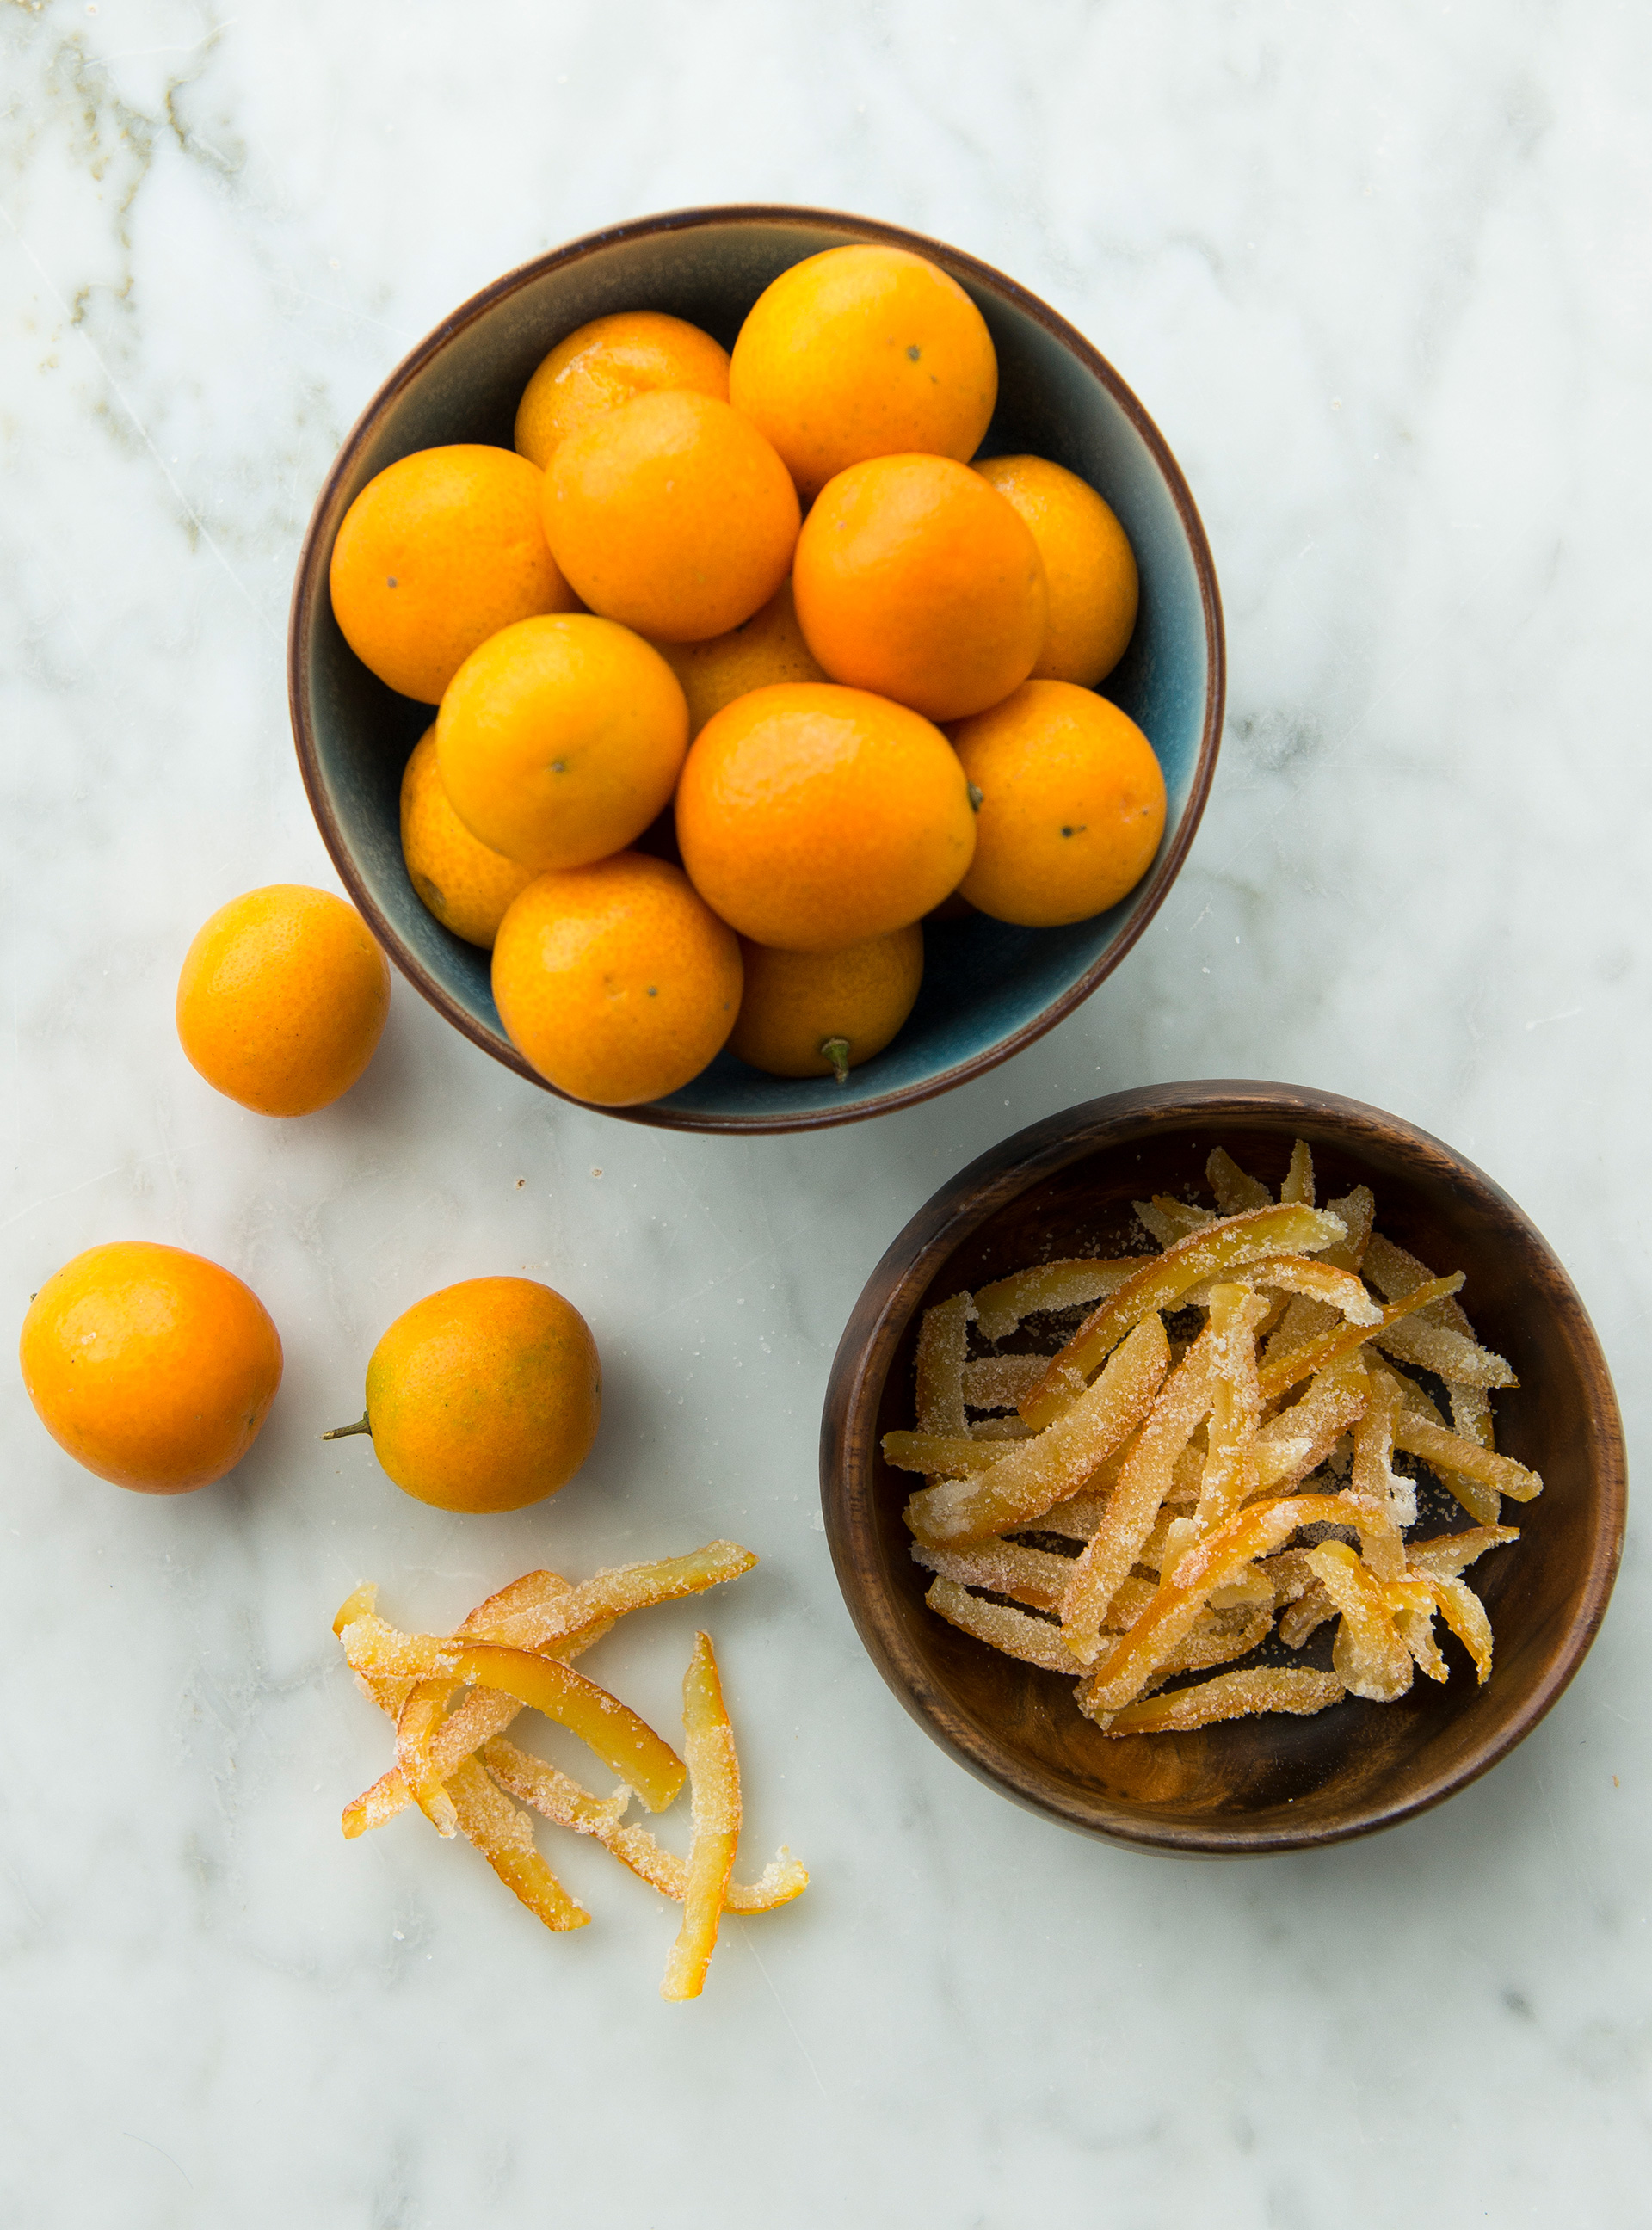 Recette Ecorces d'oranges confites - La cuisine familiale : Un